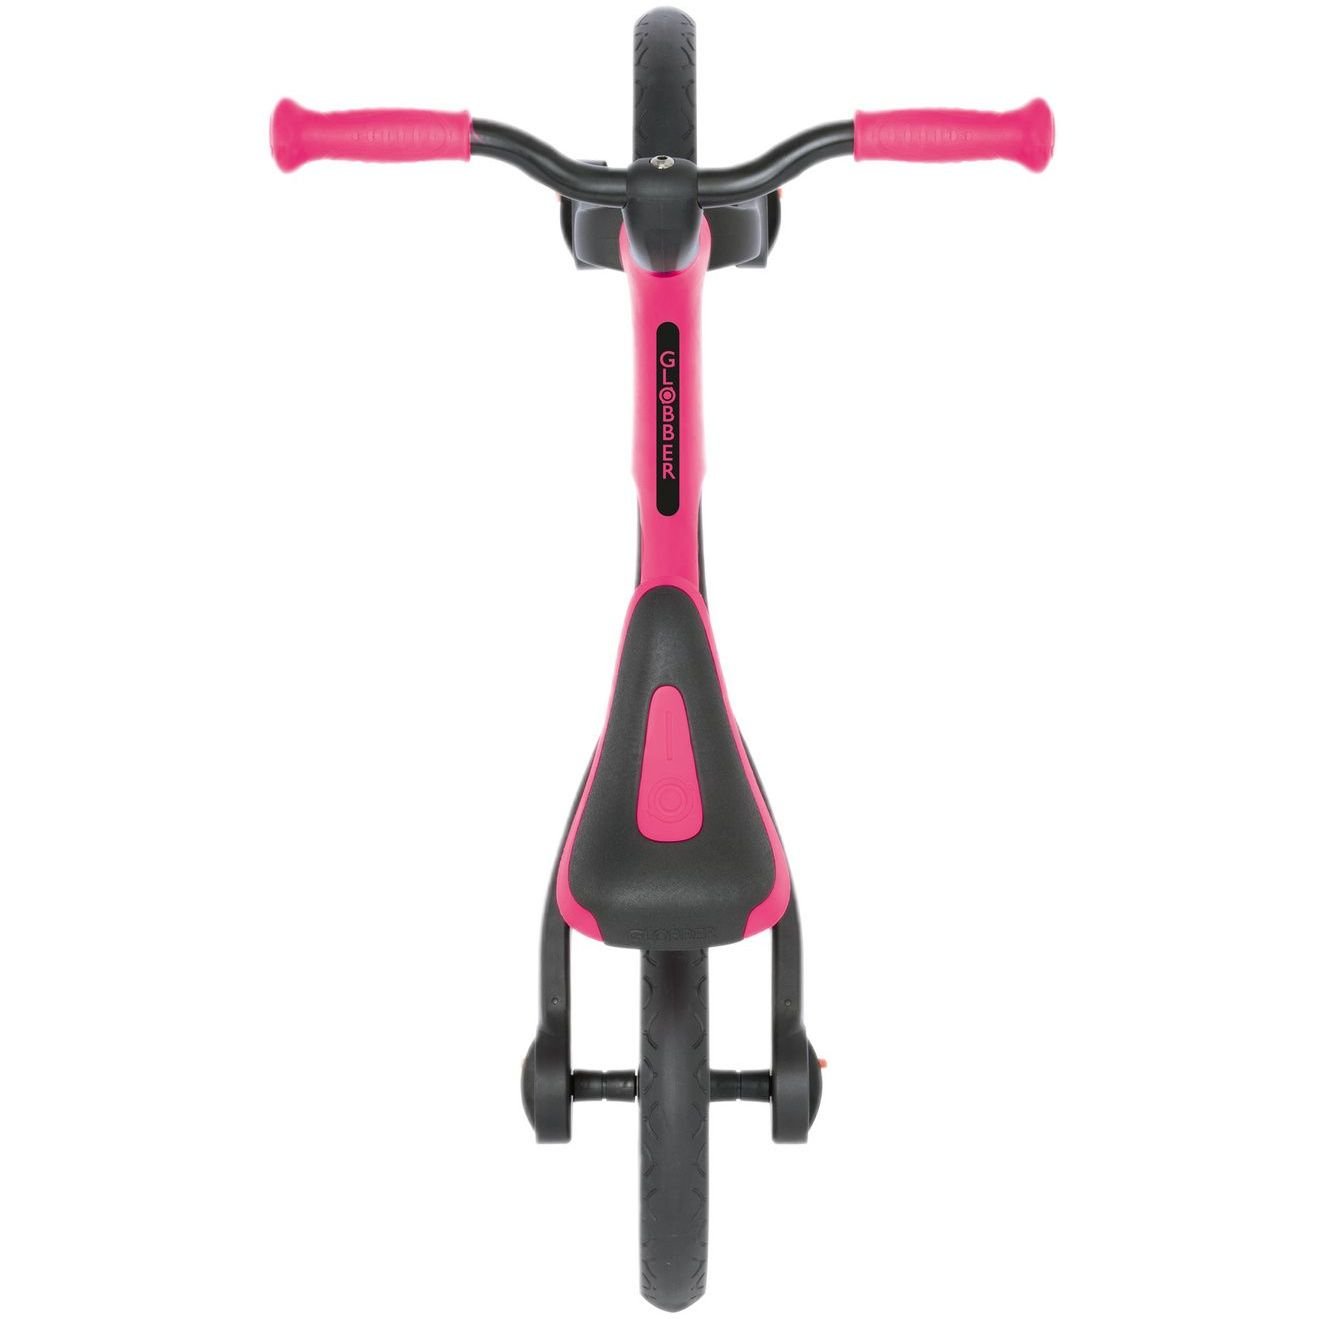 Біговел Globber Go Bike Elite рожевий (710-110) - фото 5